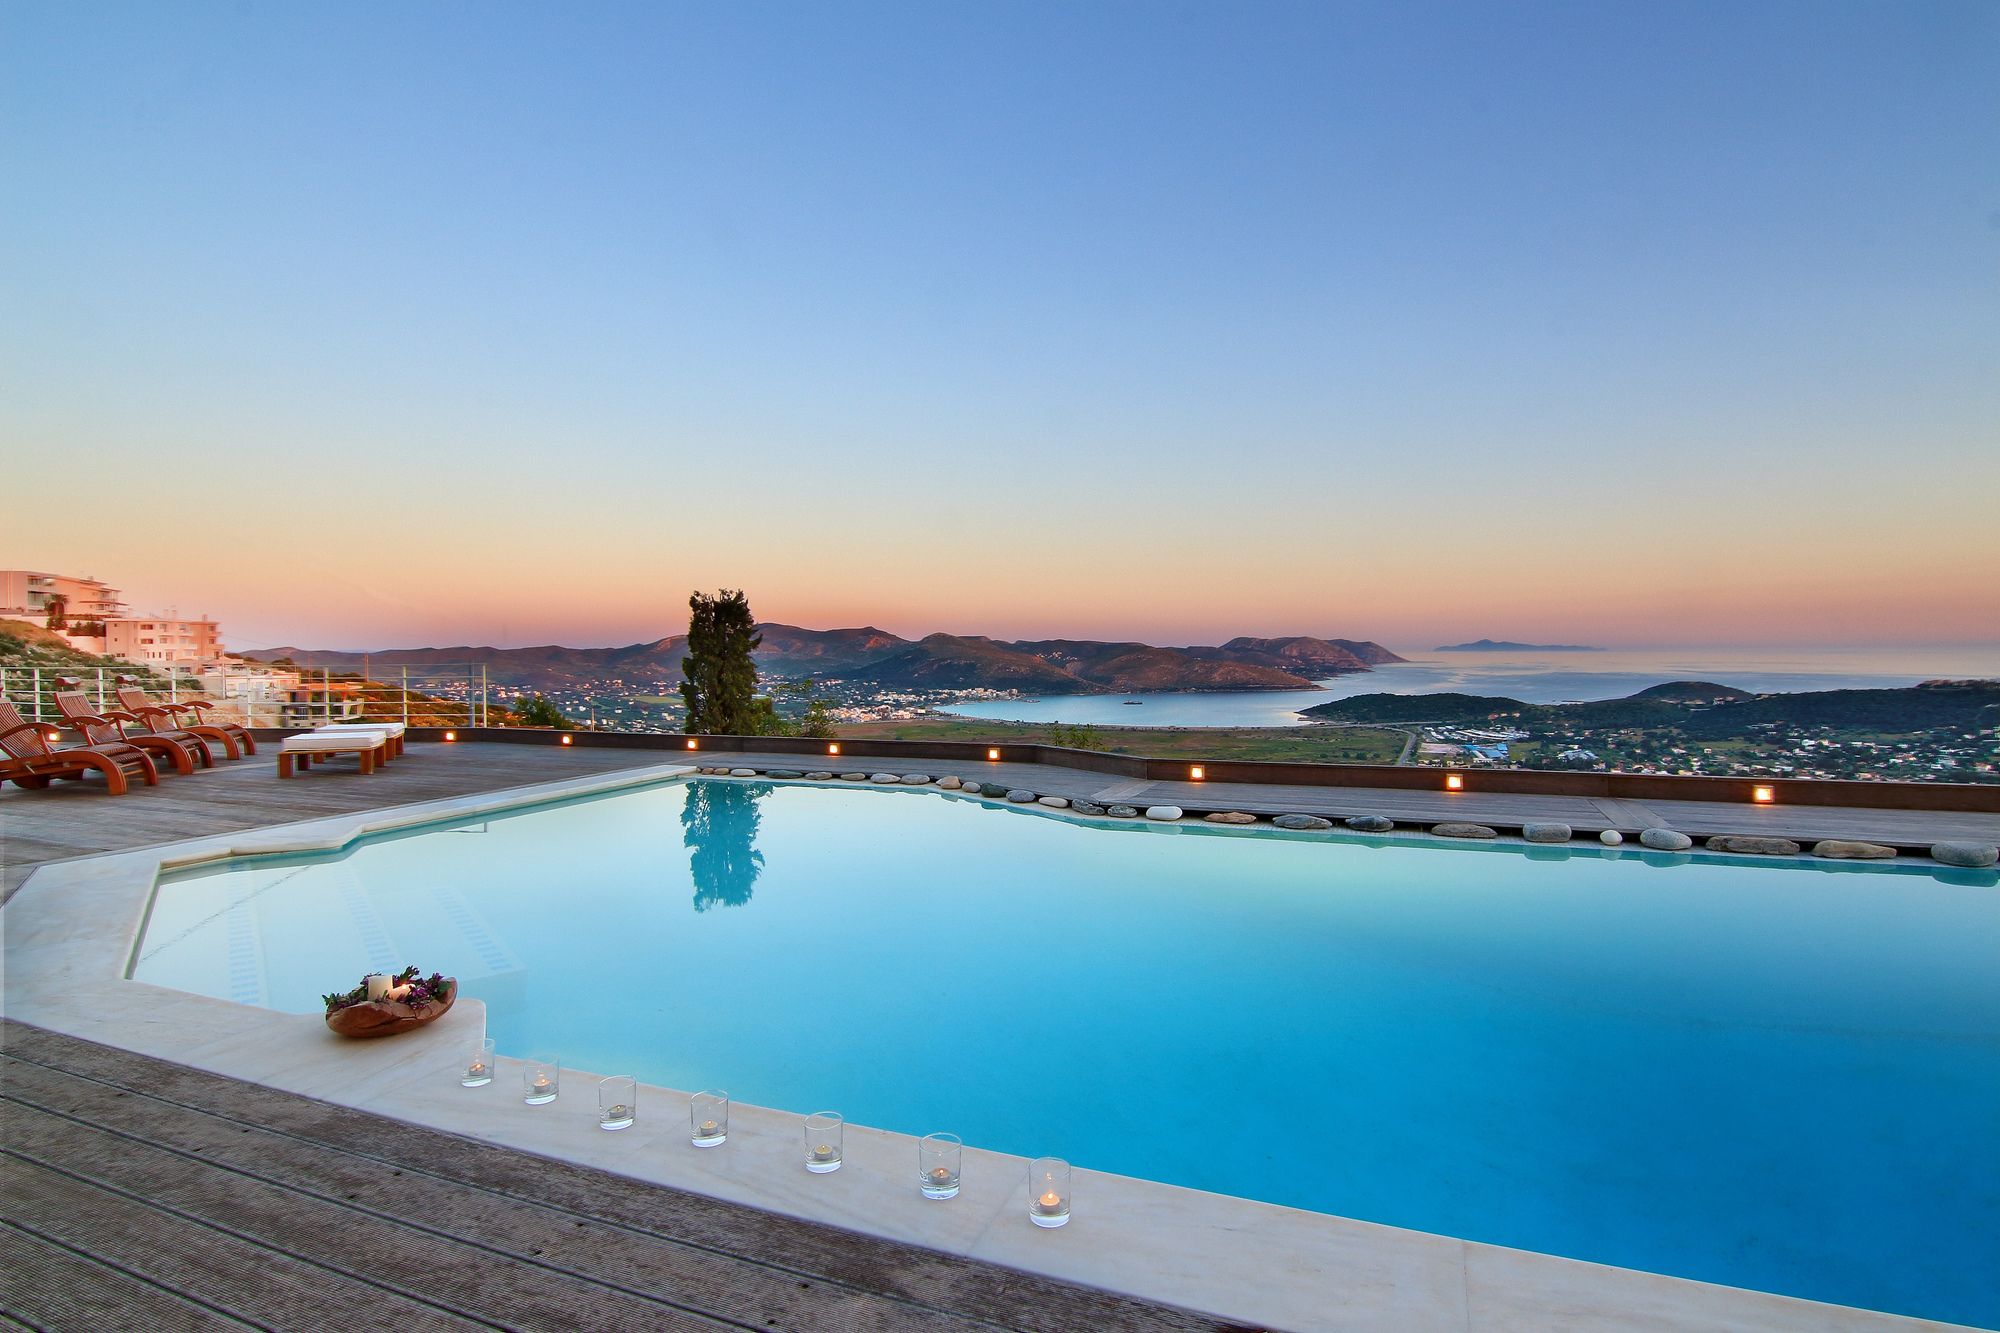 4 Bedroom Villa TakeOff in Anavyssos - BLG 69210 - Greece - Athens